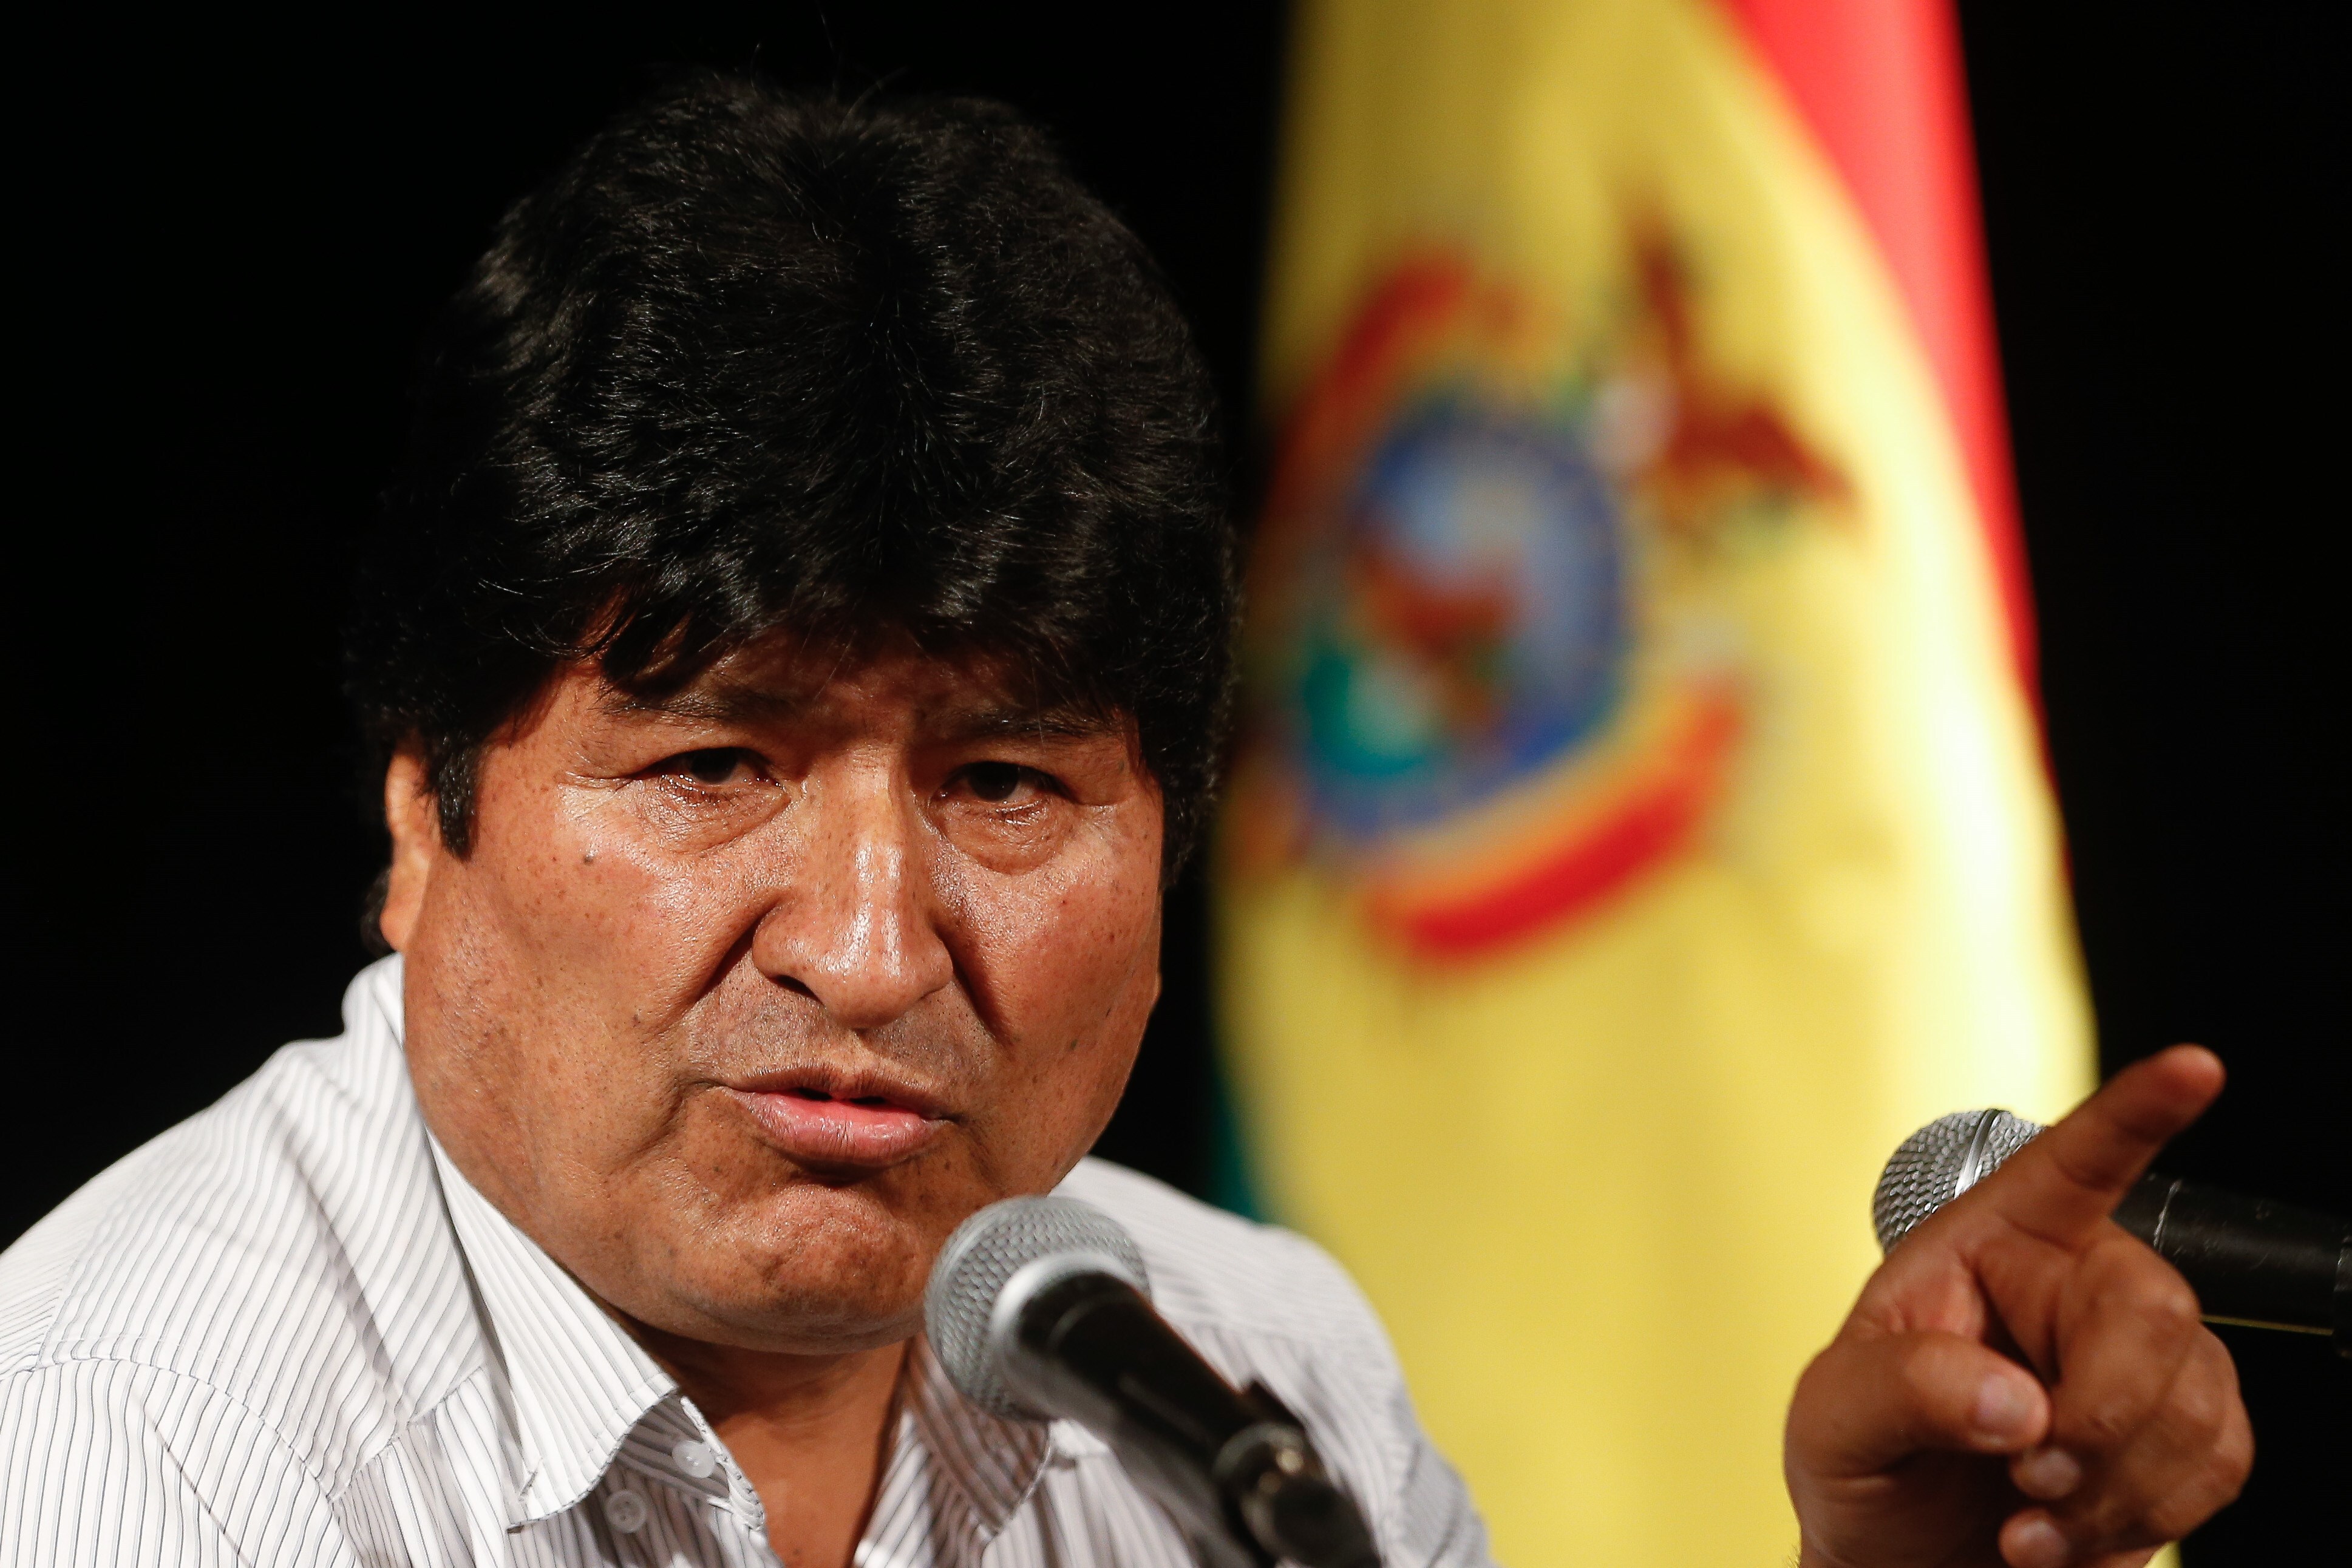 Polémica en Bolivia: docentes rechazan la inclusión de un texto “ideologizado” en las escuelas sobre la crisis de 2019